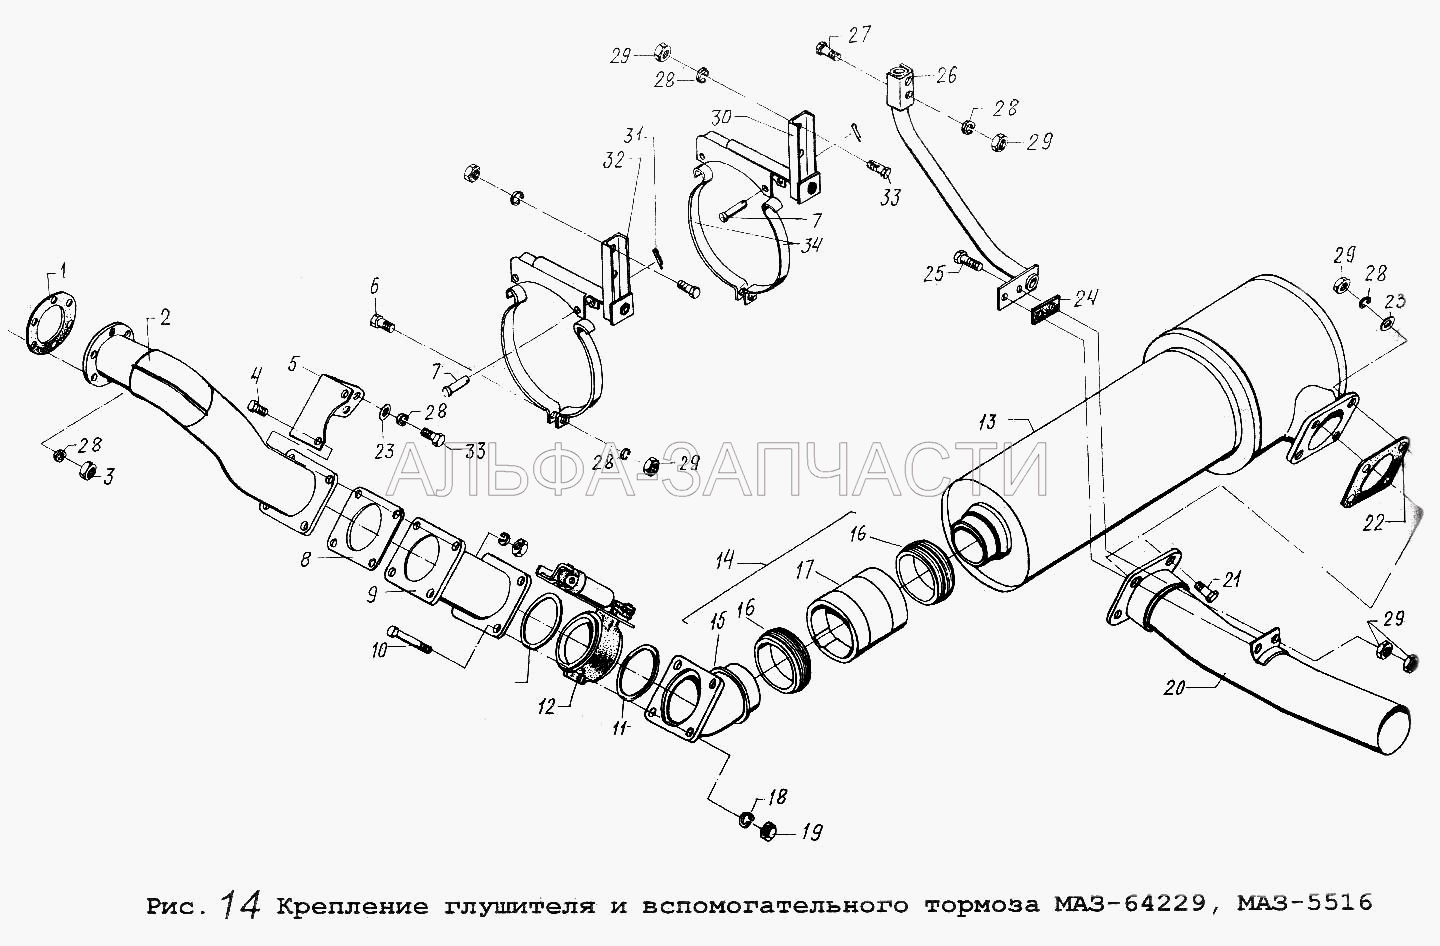 Крепление глушителя и вспомогательного тормоза МАЗ-64229, МАЗ-5516 (64227-1201009 Патрубок с шарниром) 